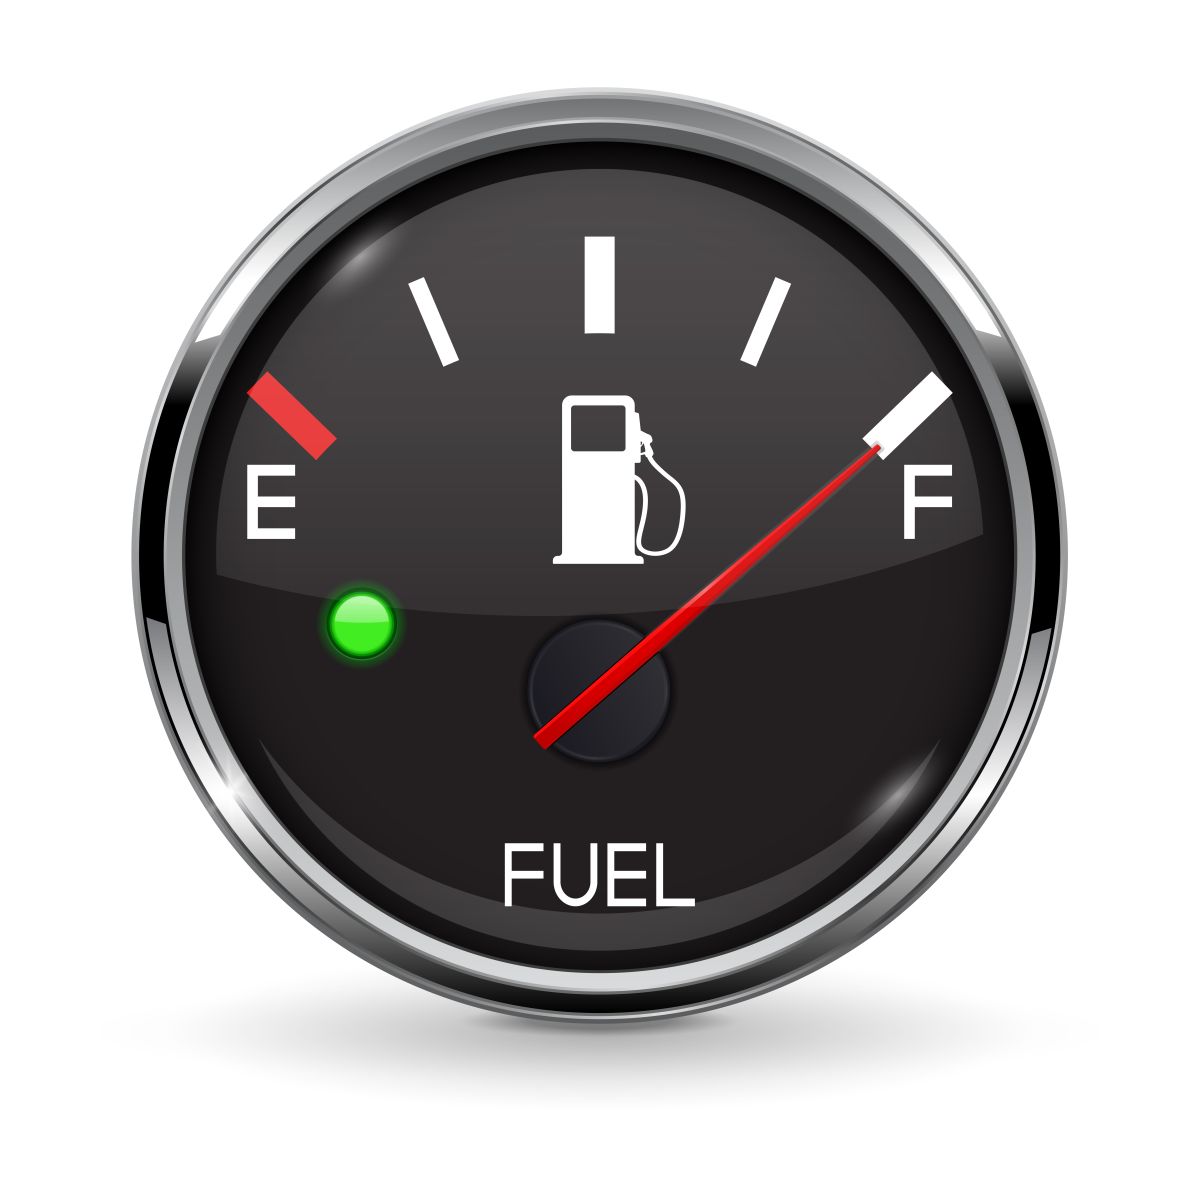 El gasómetro evita que te quedes sin gasolina repentinamente.